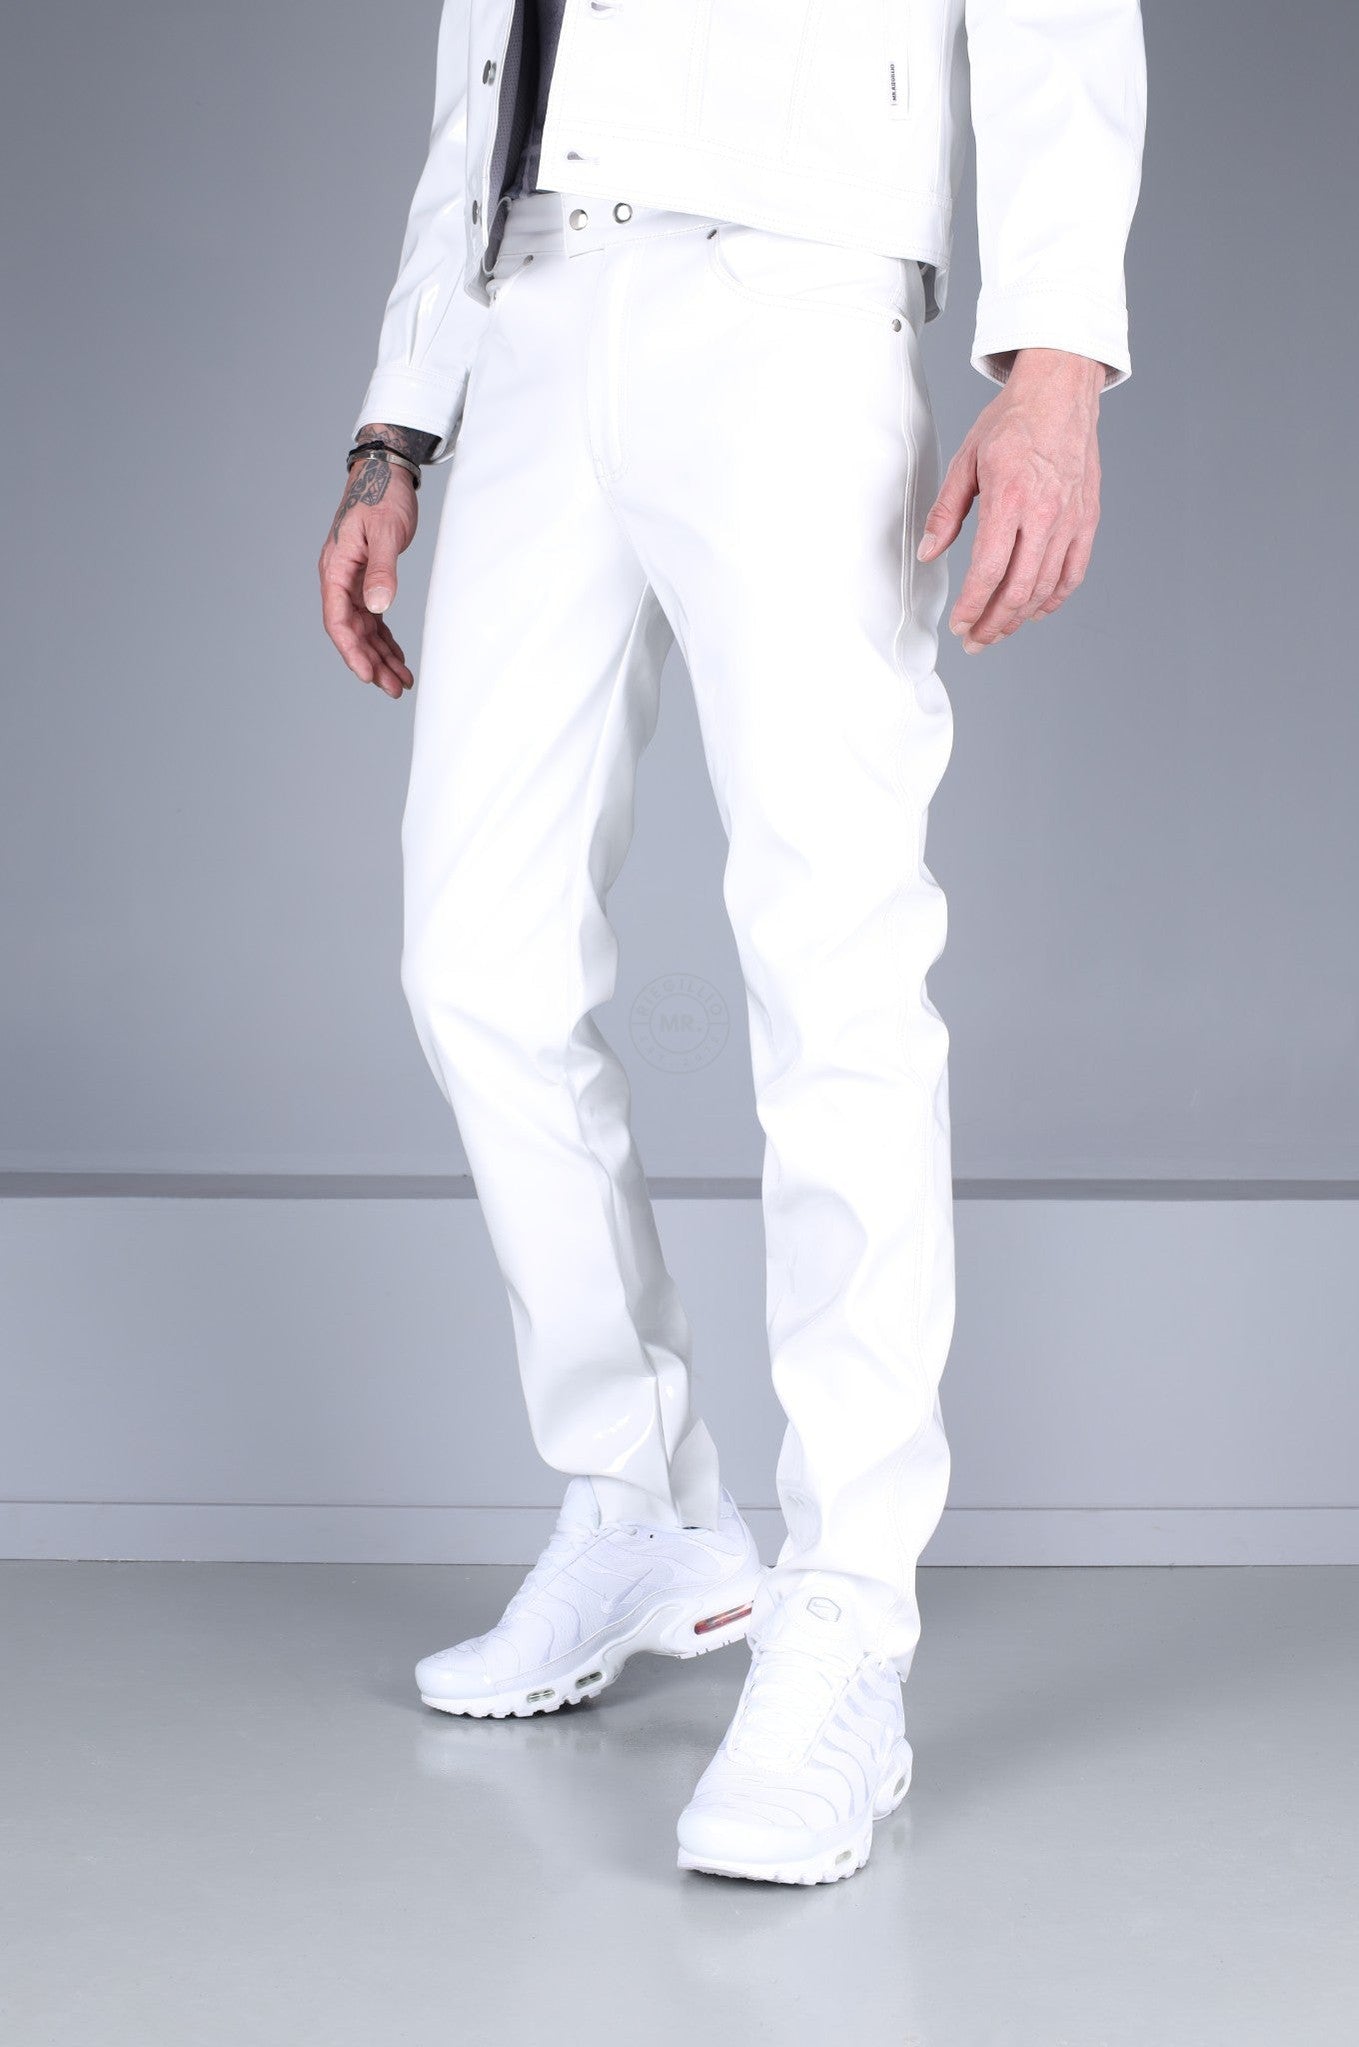 White Heavy PVC Pants at MR. Riegillio